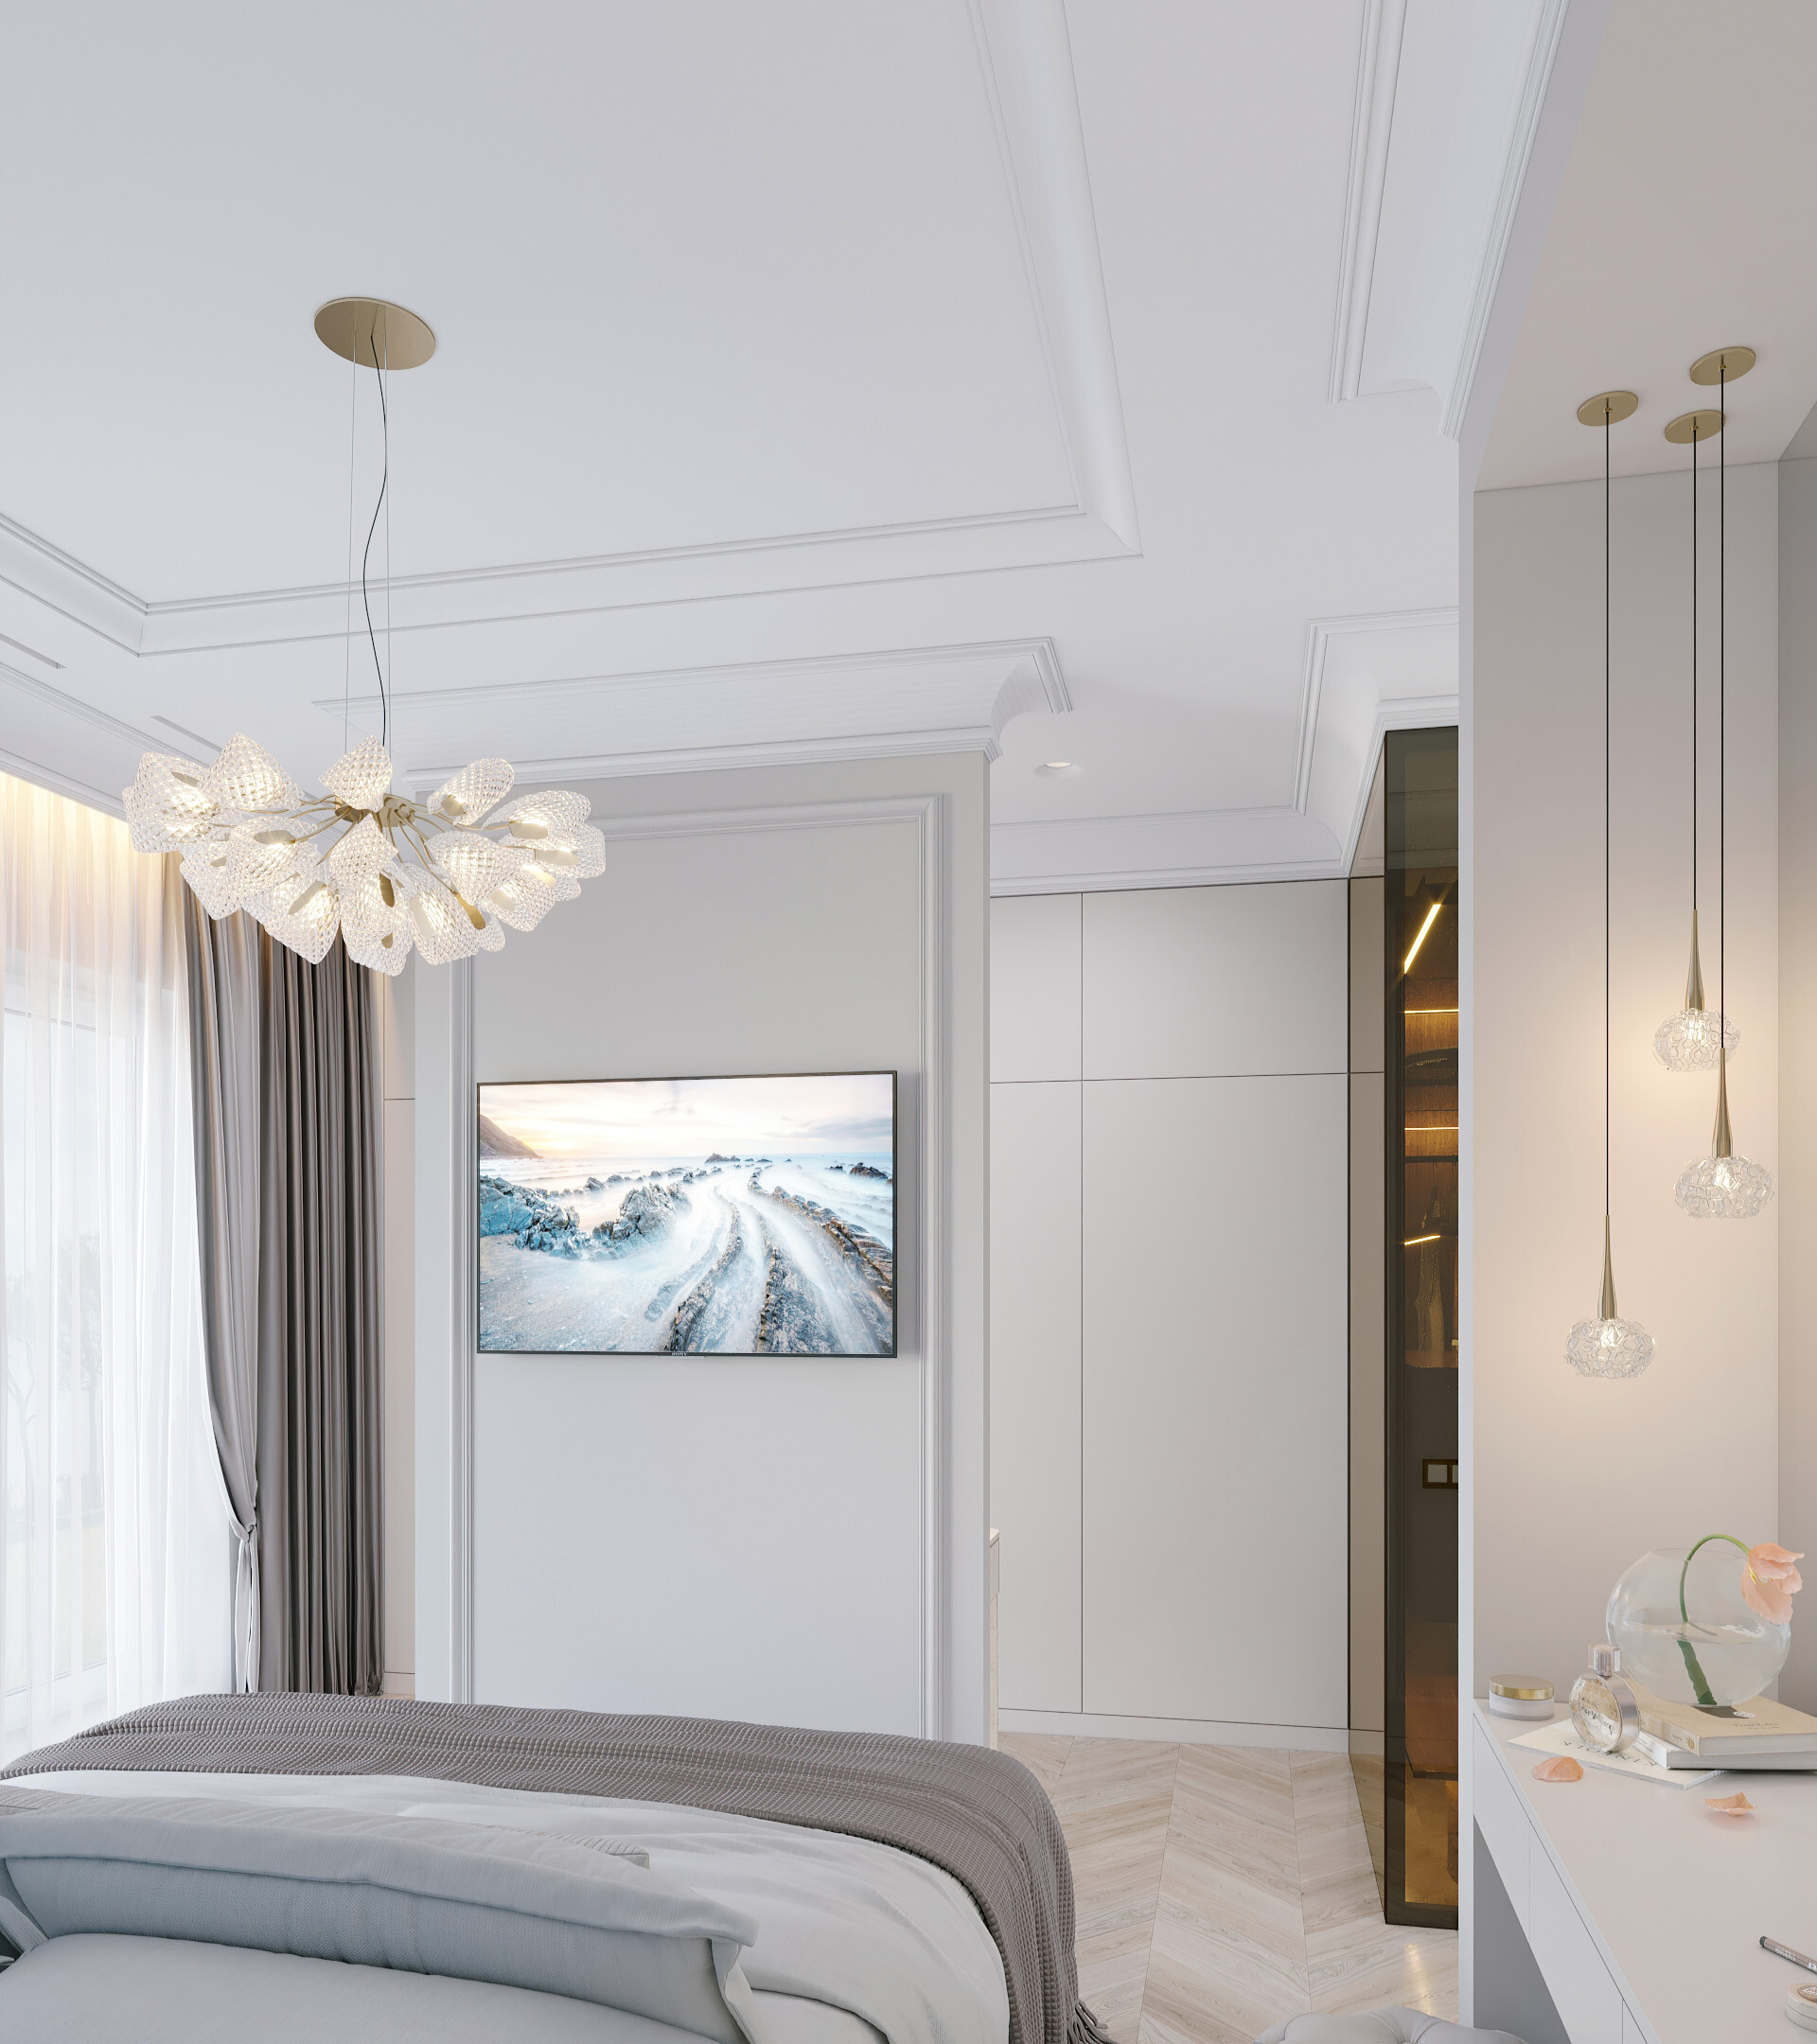 Интерьер спальни cветовыми линиями, подсветкой настенной, подсветкой светодиодной и светильниками над кроватью в классическом стиле